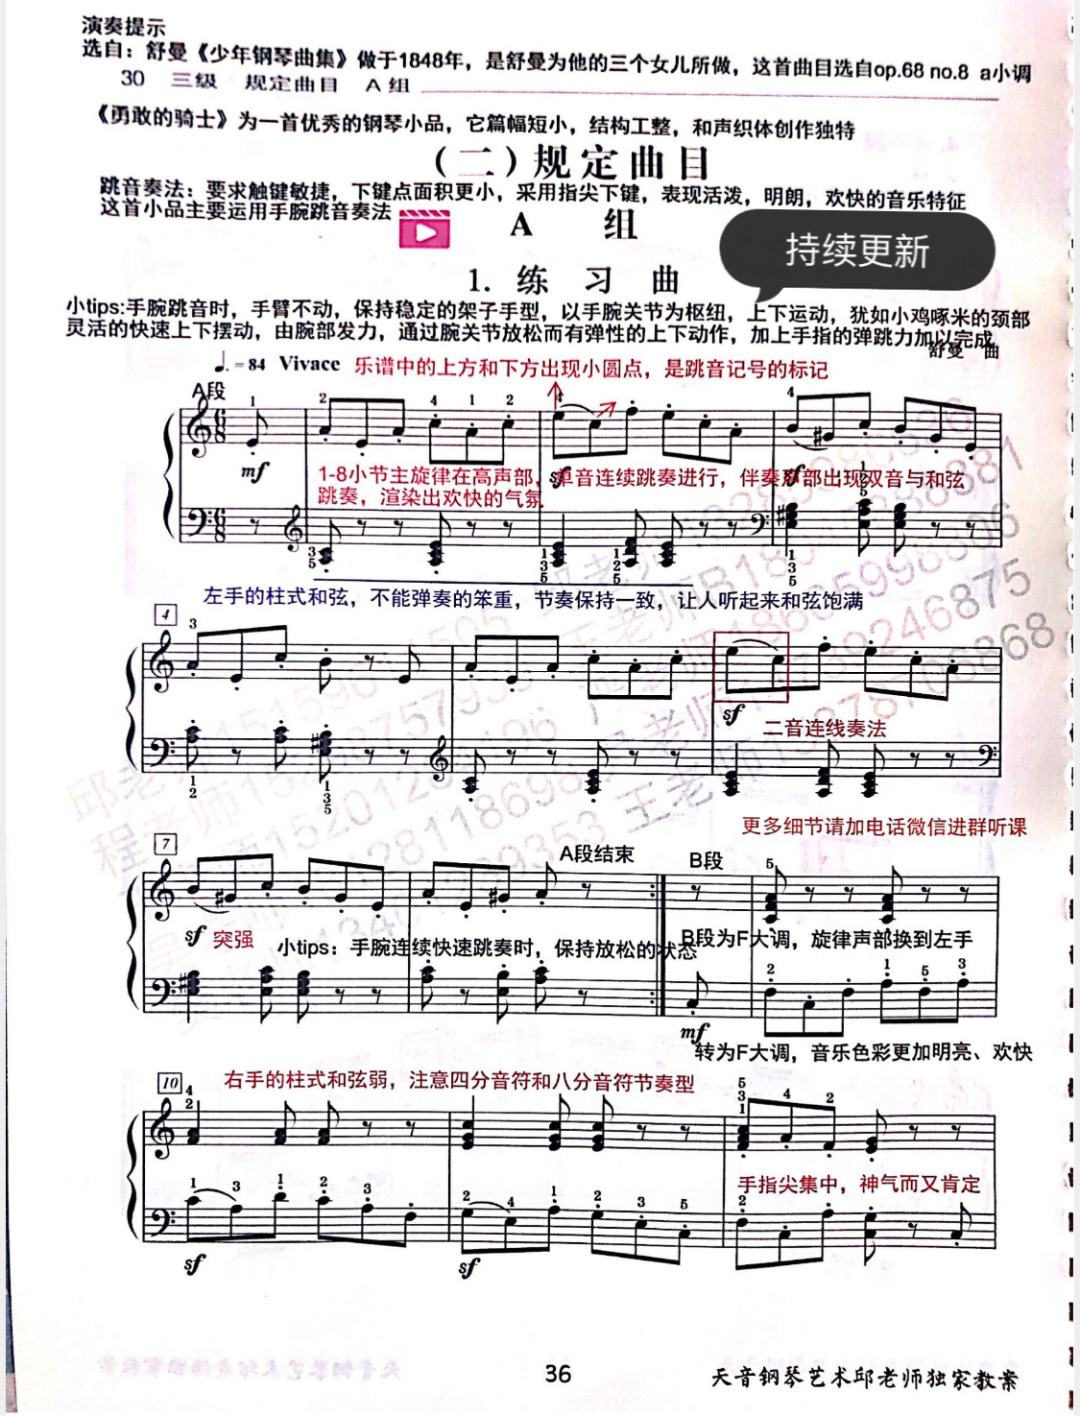 包含中国音乐学院钢琴考级曲目七级音频的词条